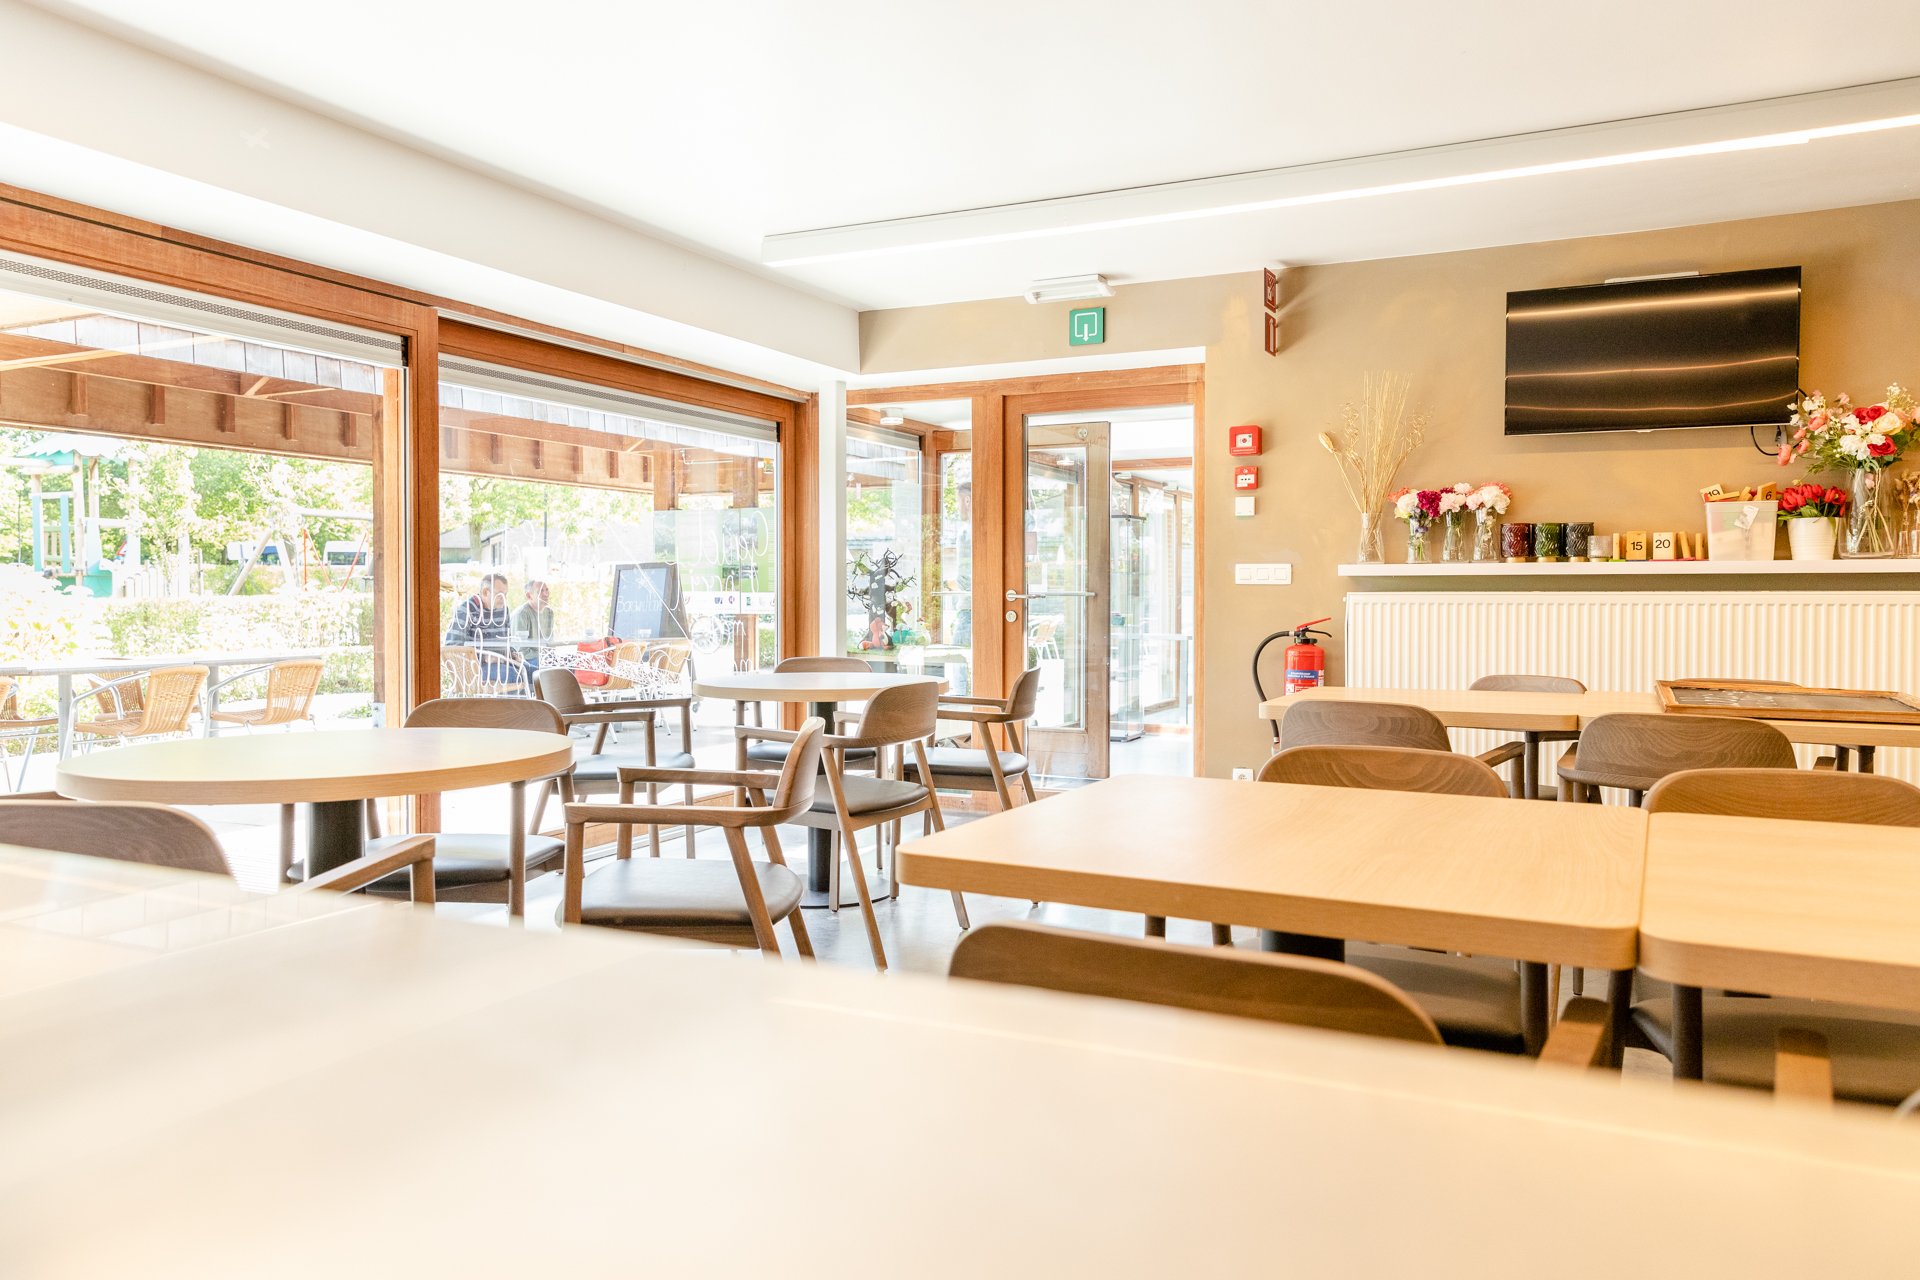 Binnenruimte cafetaria van de Borgwalhoeve. Tafels en stoelen met zicht op overdekt terras.